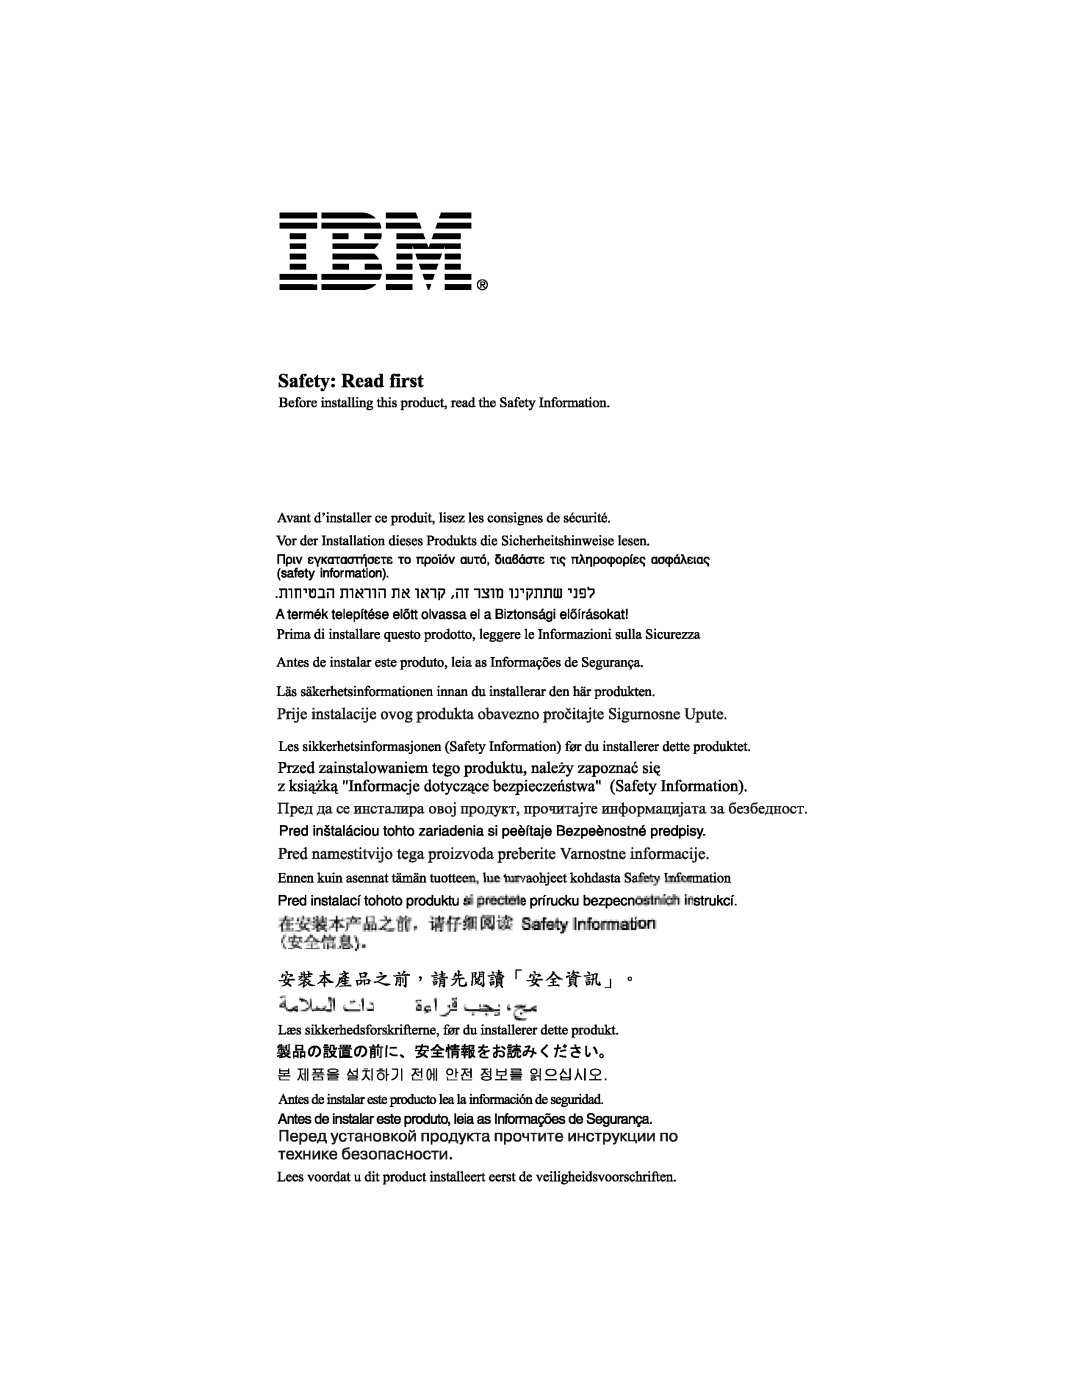 IBM 6633 - 4LE manual 